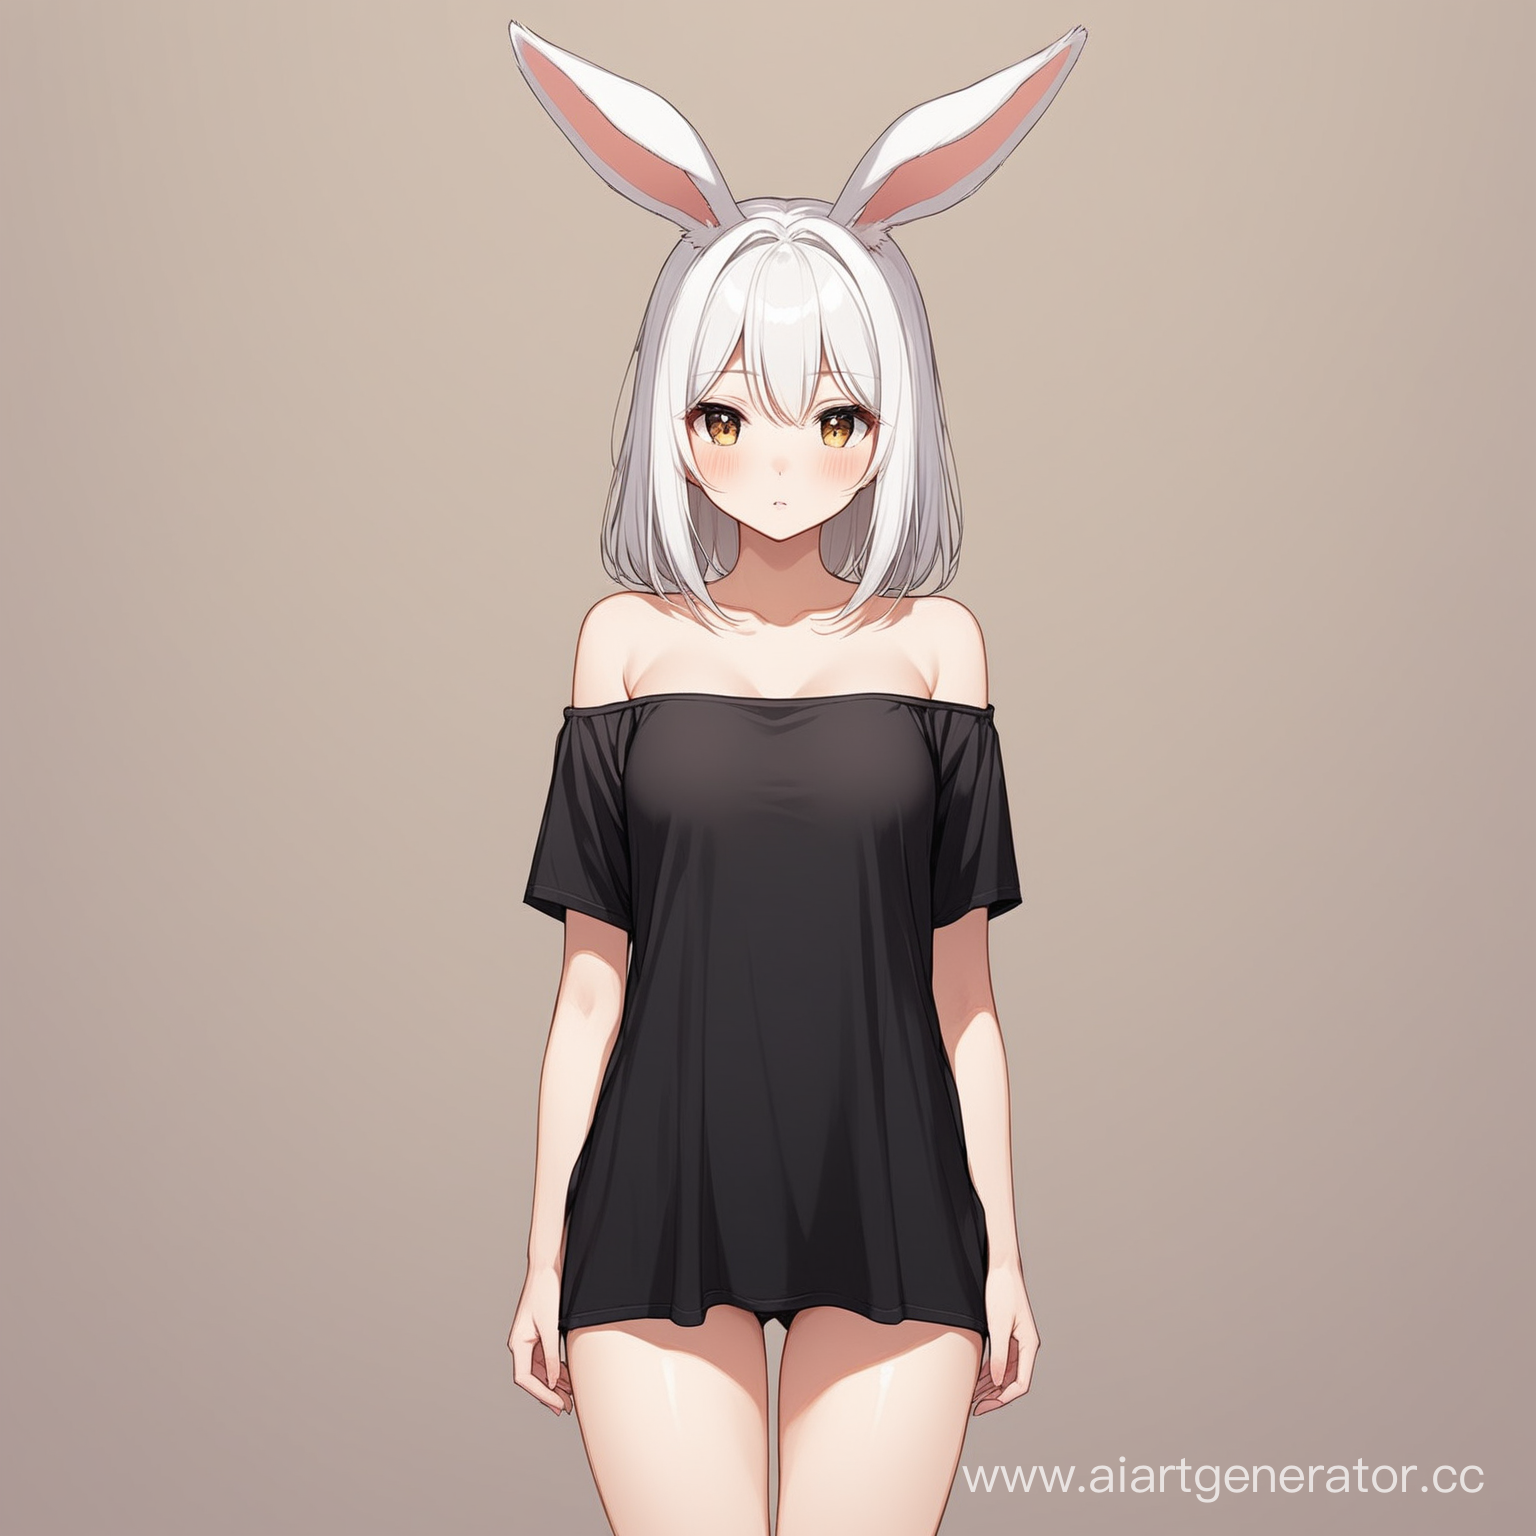 Girl, white hair, bunny ears, black t-shirt, bare legs, standing, bare shoulders